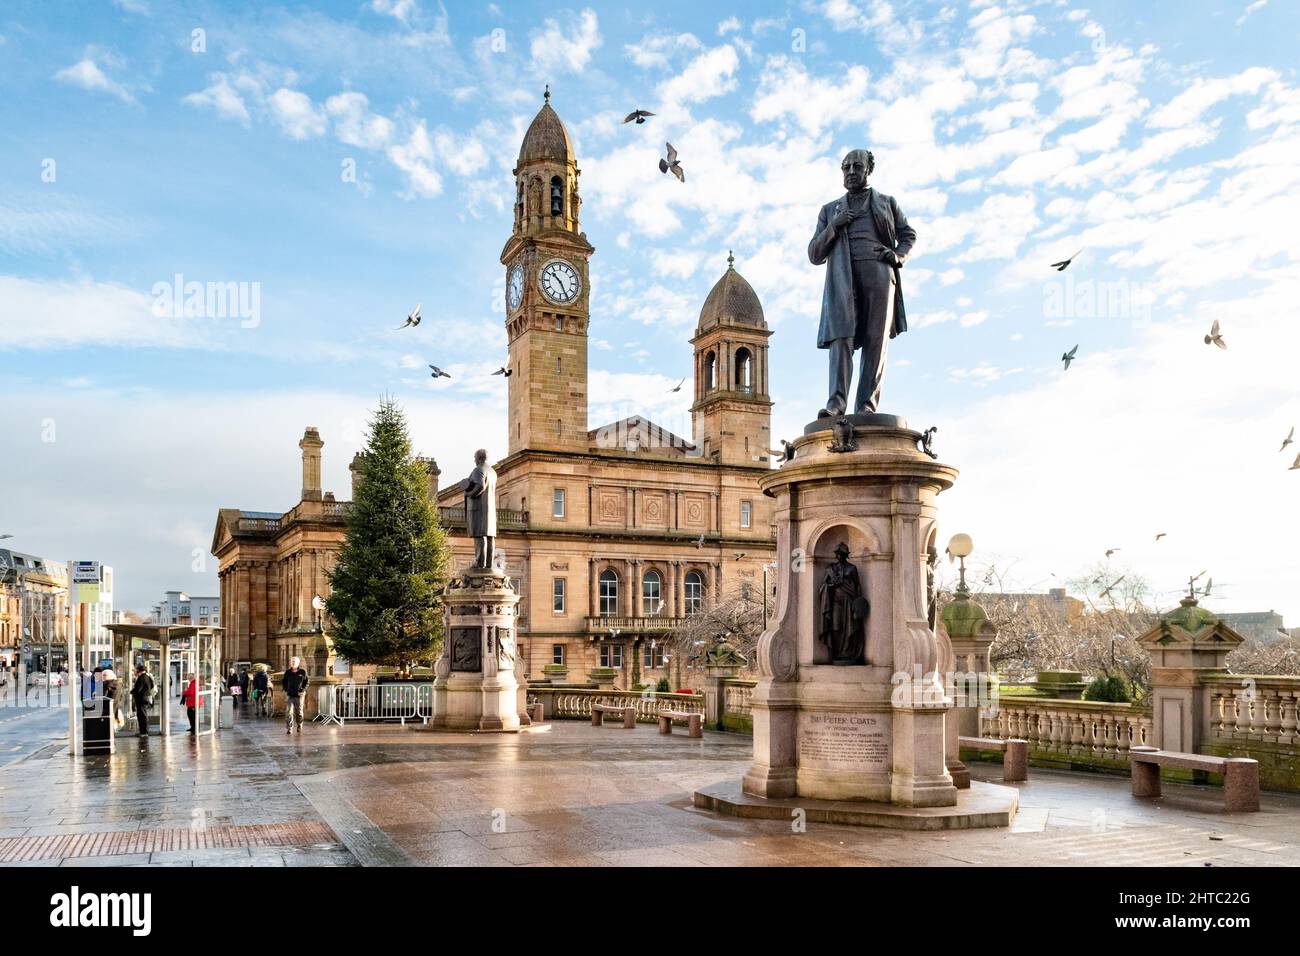 Hôtel de ville de Paisley et statue de Sir Peter Coates, Paisley, Écosse, Royaume-Uni Banque D'Images